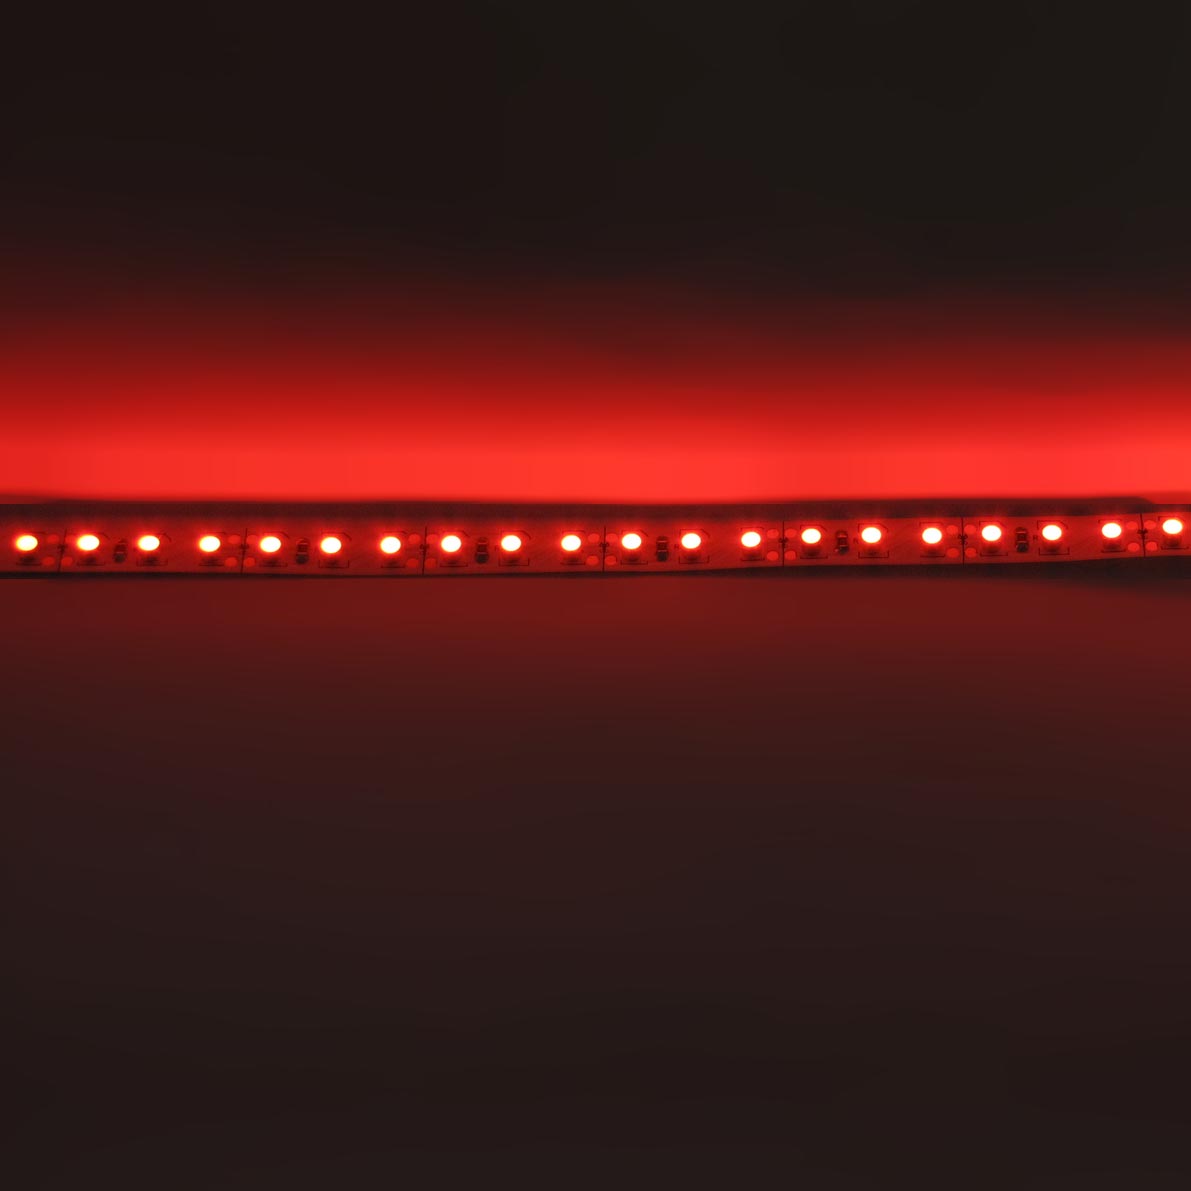 светодиодная лента standart class, 3528, 120led/m, red, 12v, ip33, артикул 52693